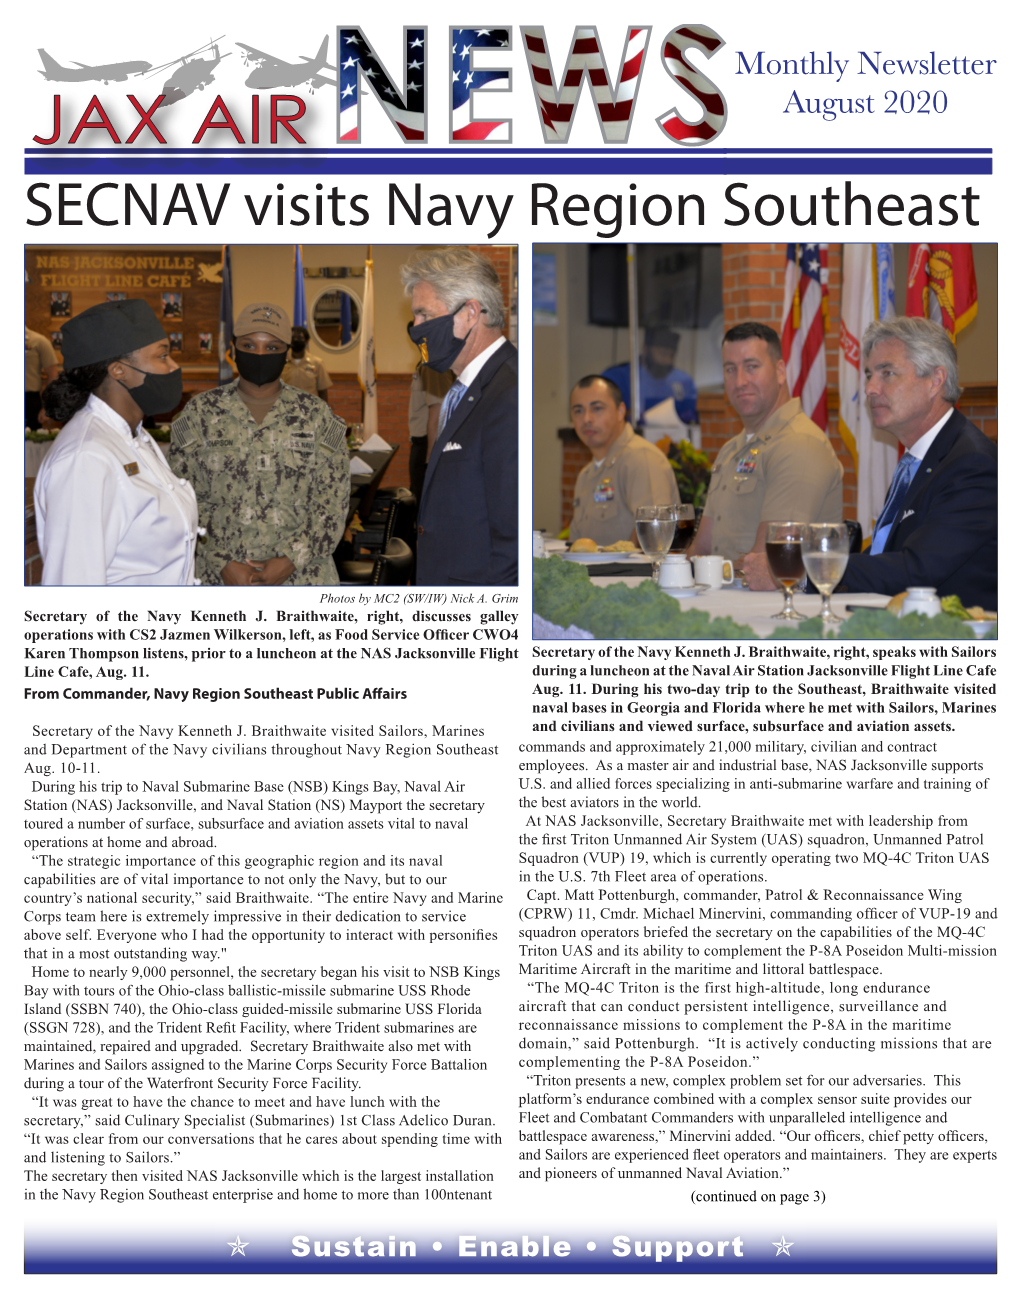 SECNAV Visits Navy Region Southeast